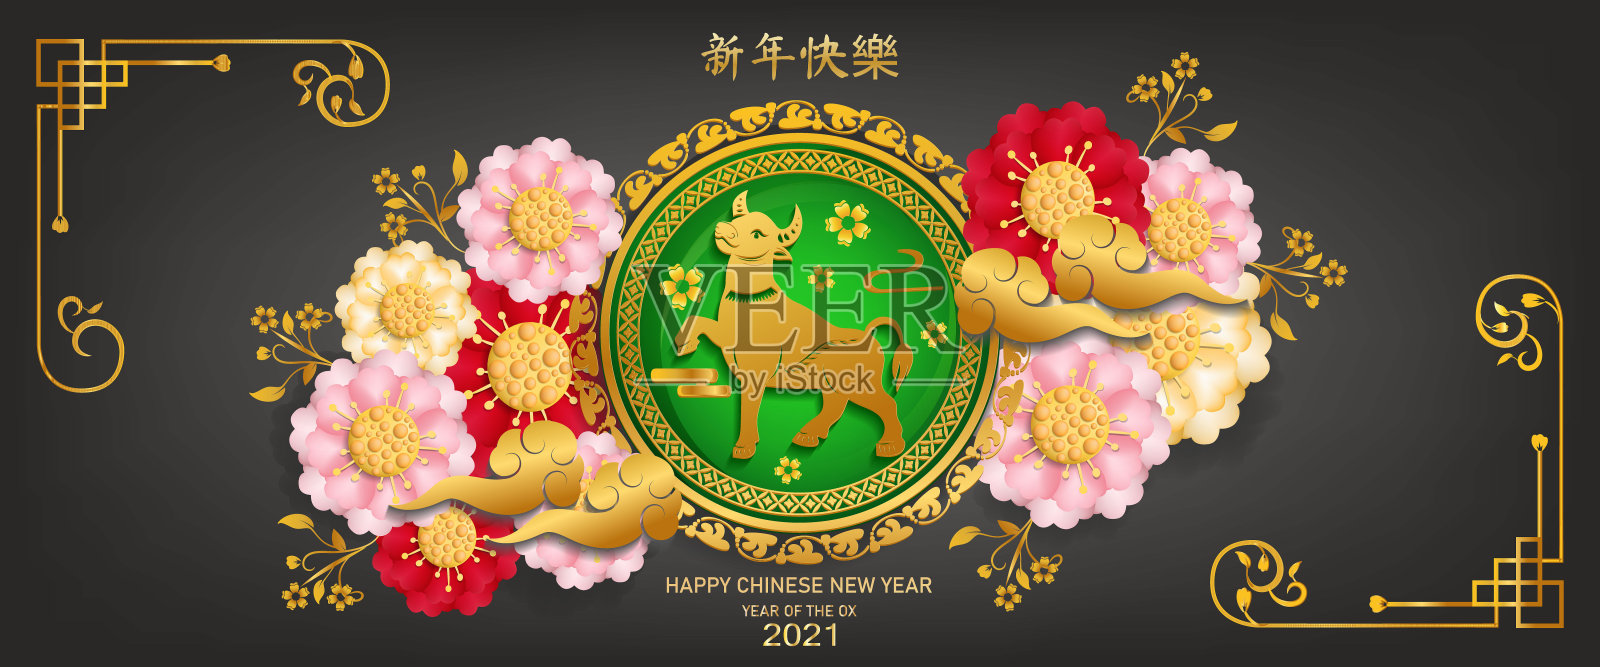 中国新年牛年2021年。灰纸剪牛字。花和亚洲元素与工艺风格的背景。(中文翻译:2021年春节快乐。年的牛)插画图片素材